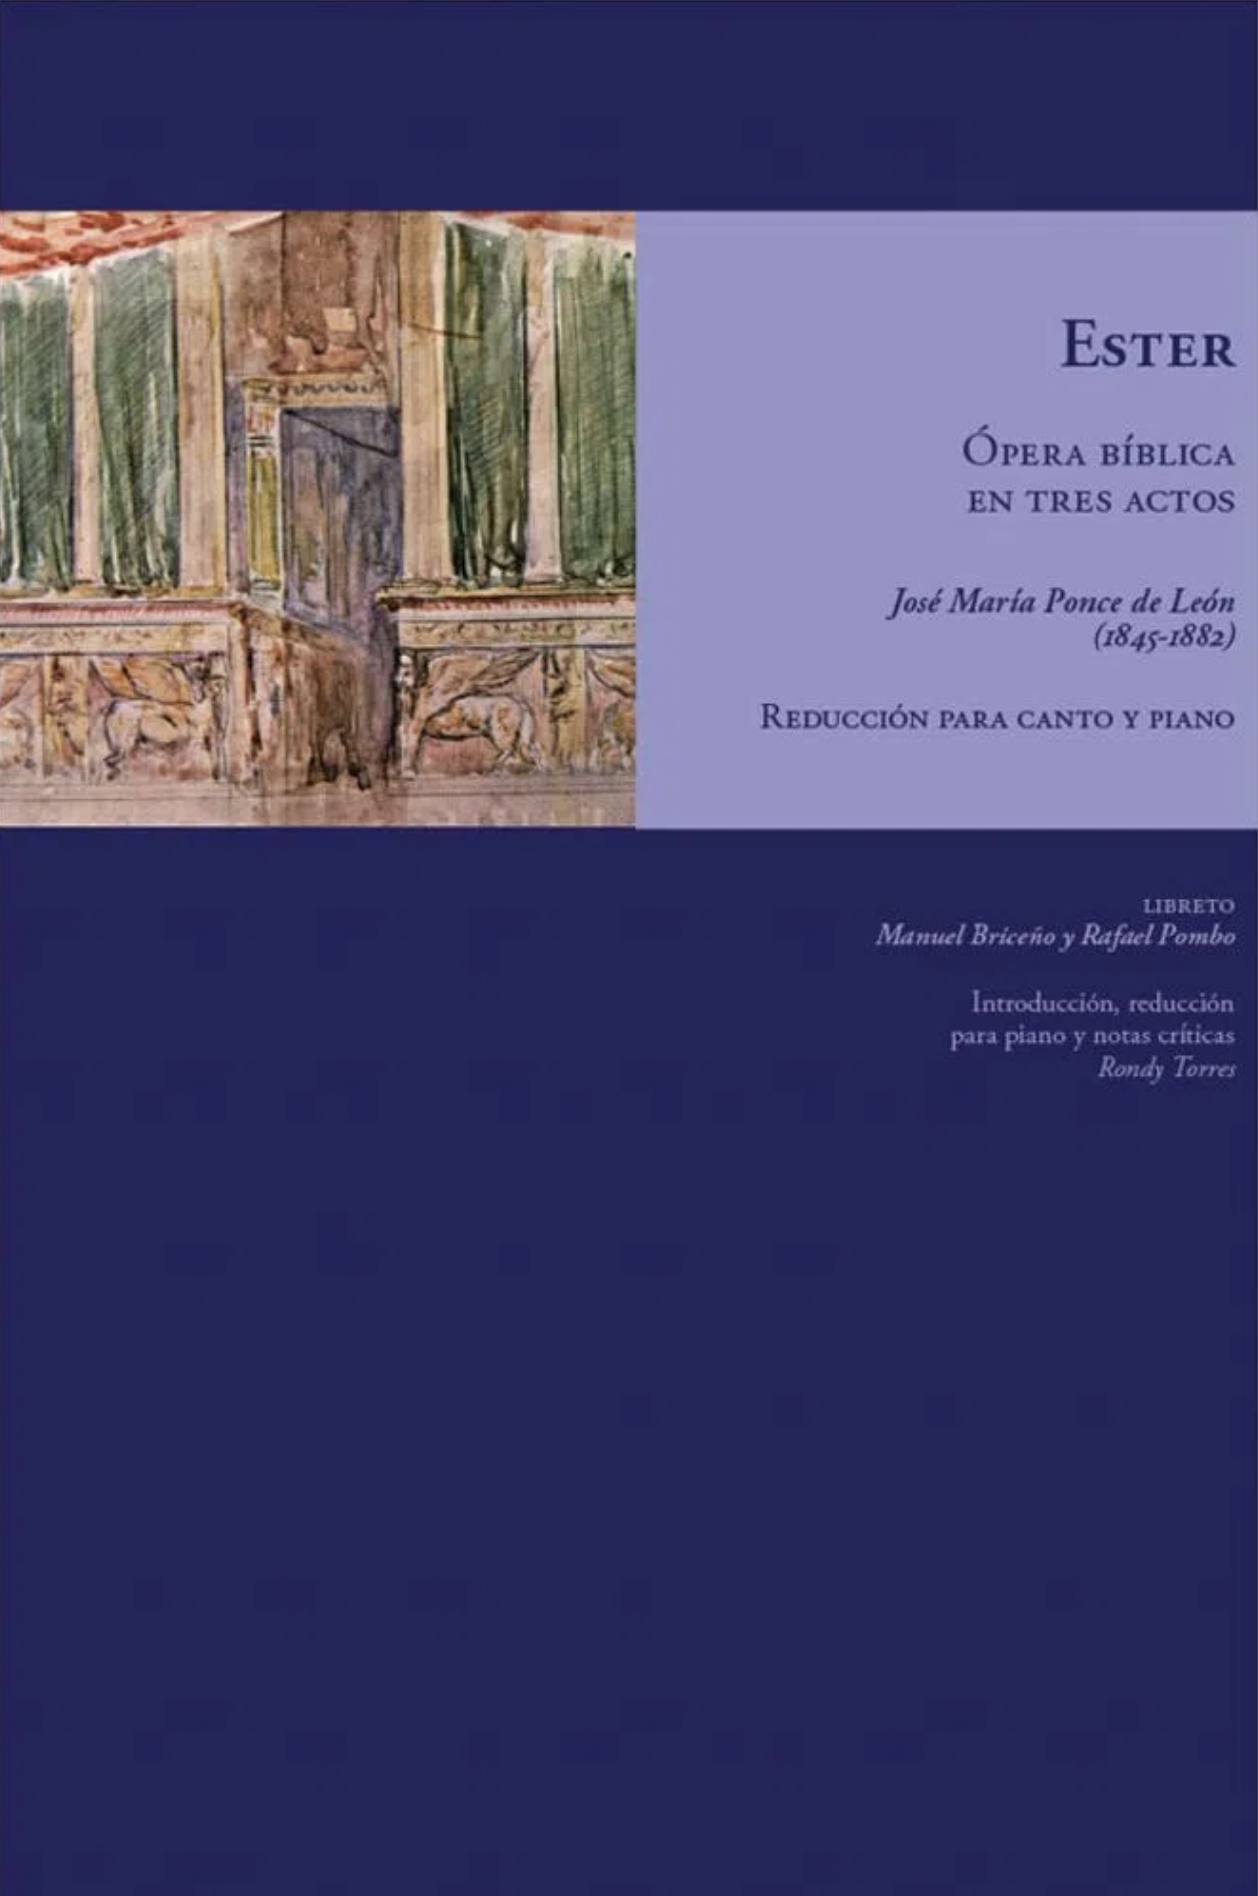 Ester, ópera bíblica en tres actos. Reducción para canto y piano